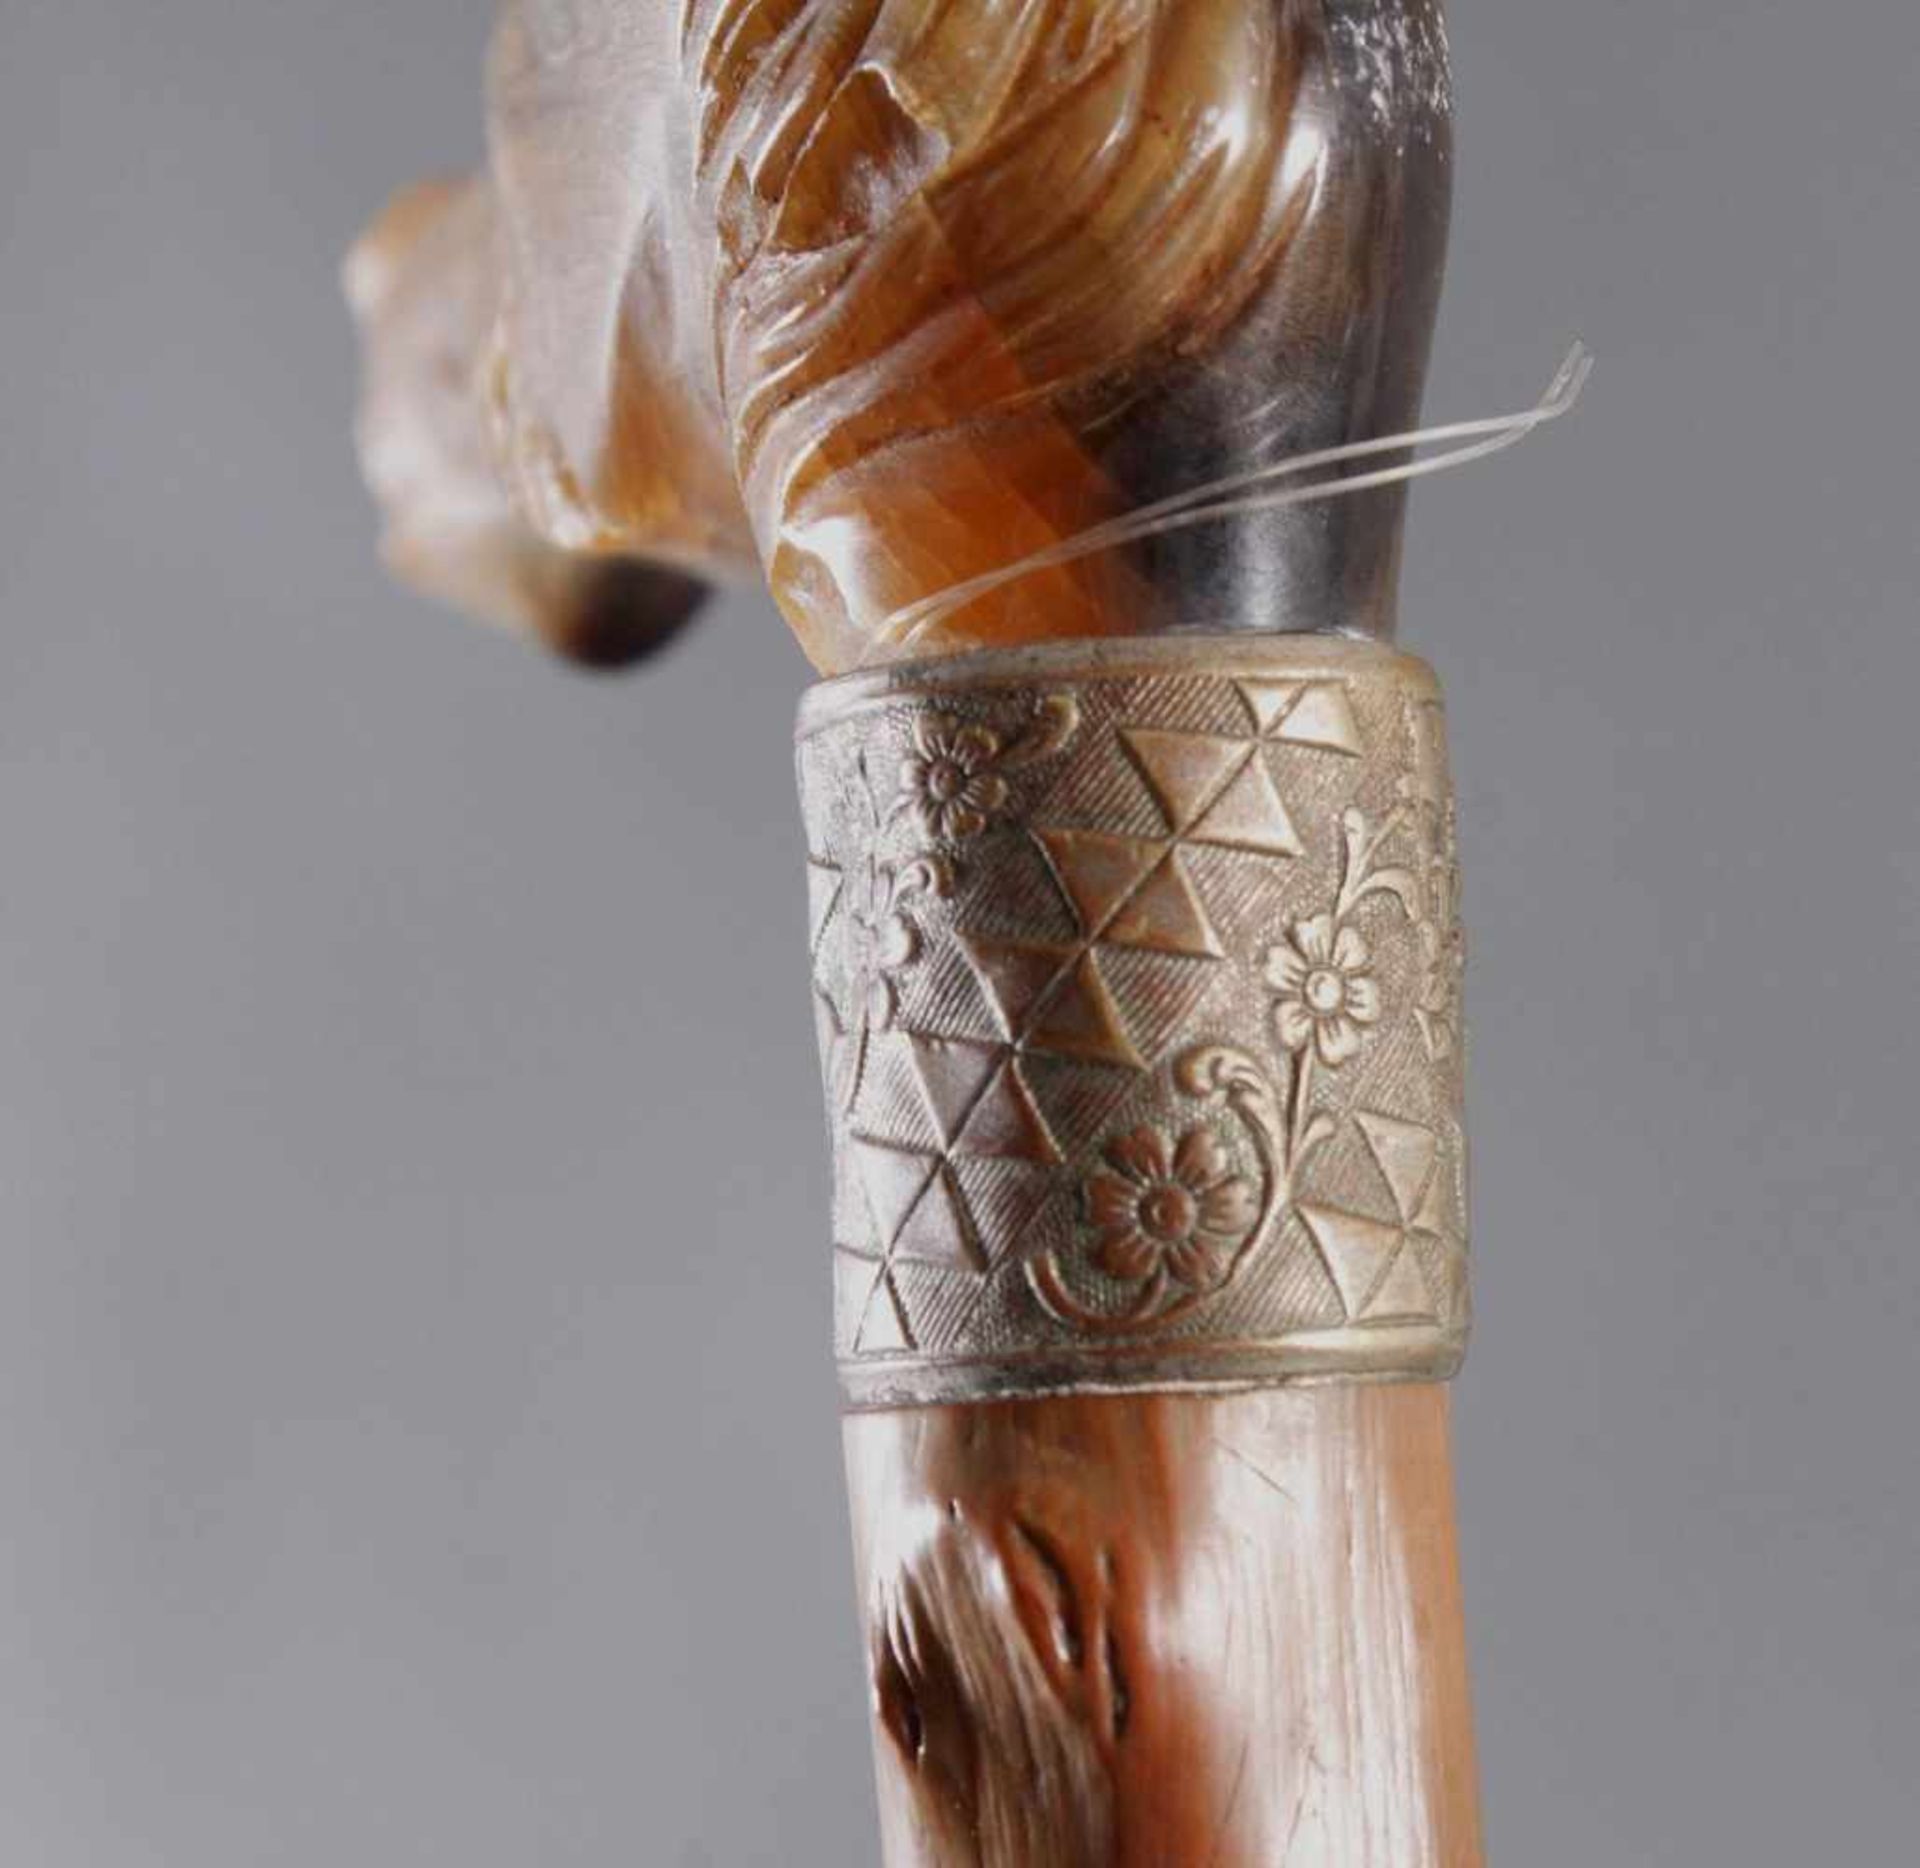 Spazierstock mit Pferdekopf aus HornSchlehen Holz/Horn, geschnitzt, in Form eines Pferdekopfes ( - Image 5 of 5